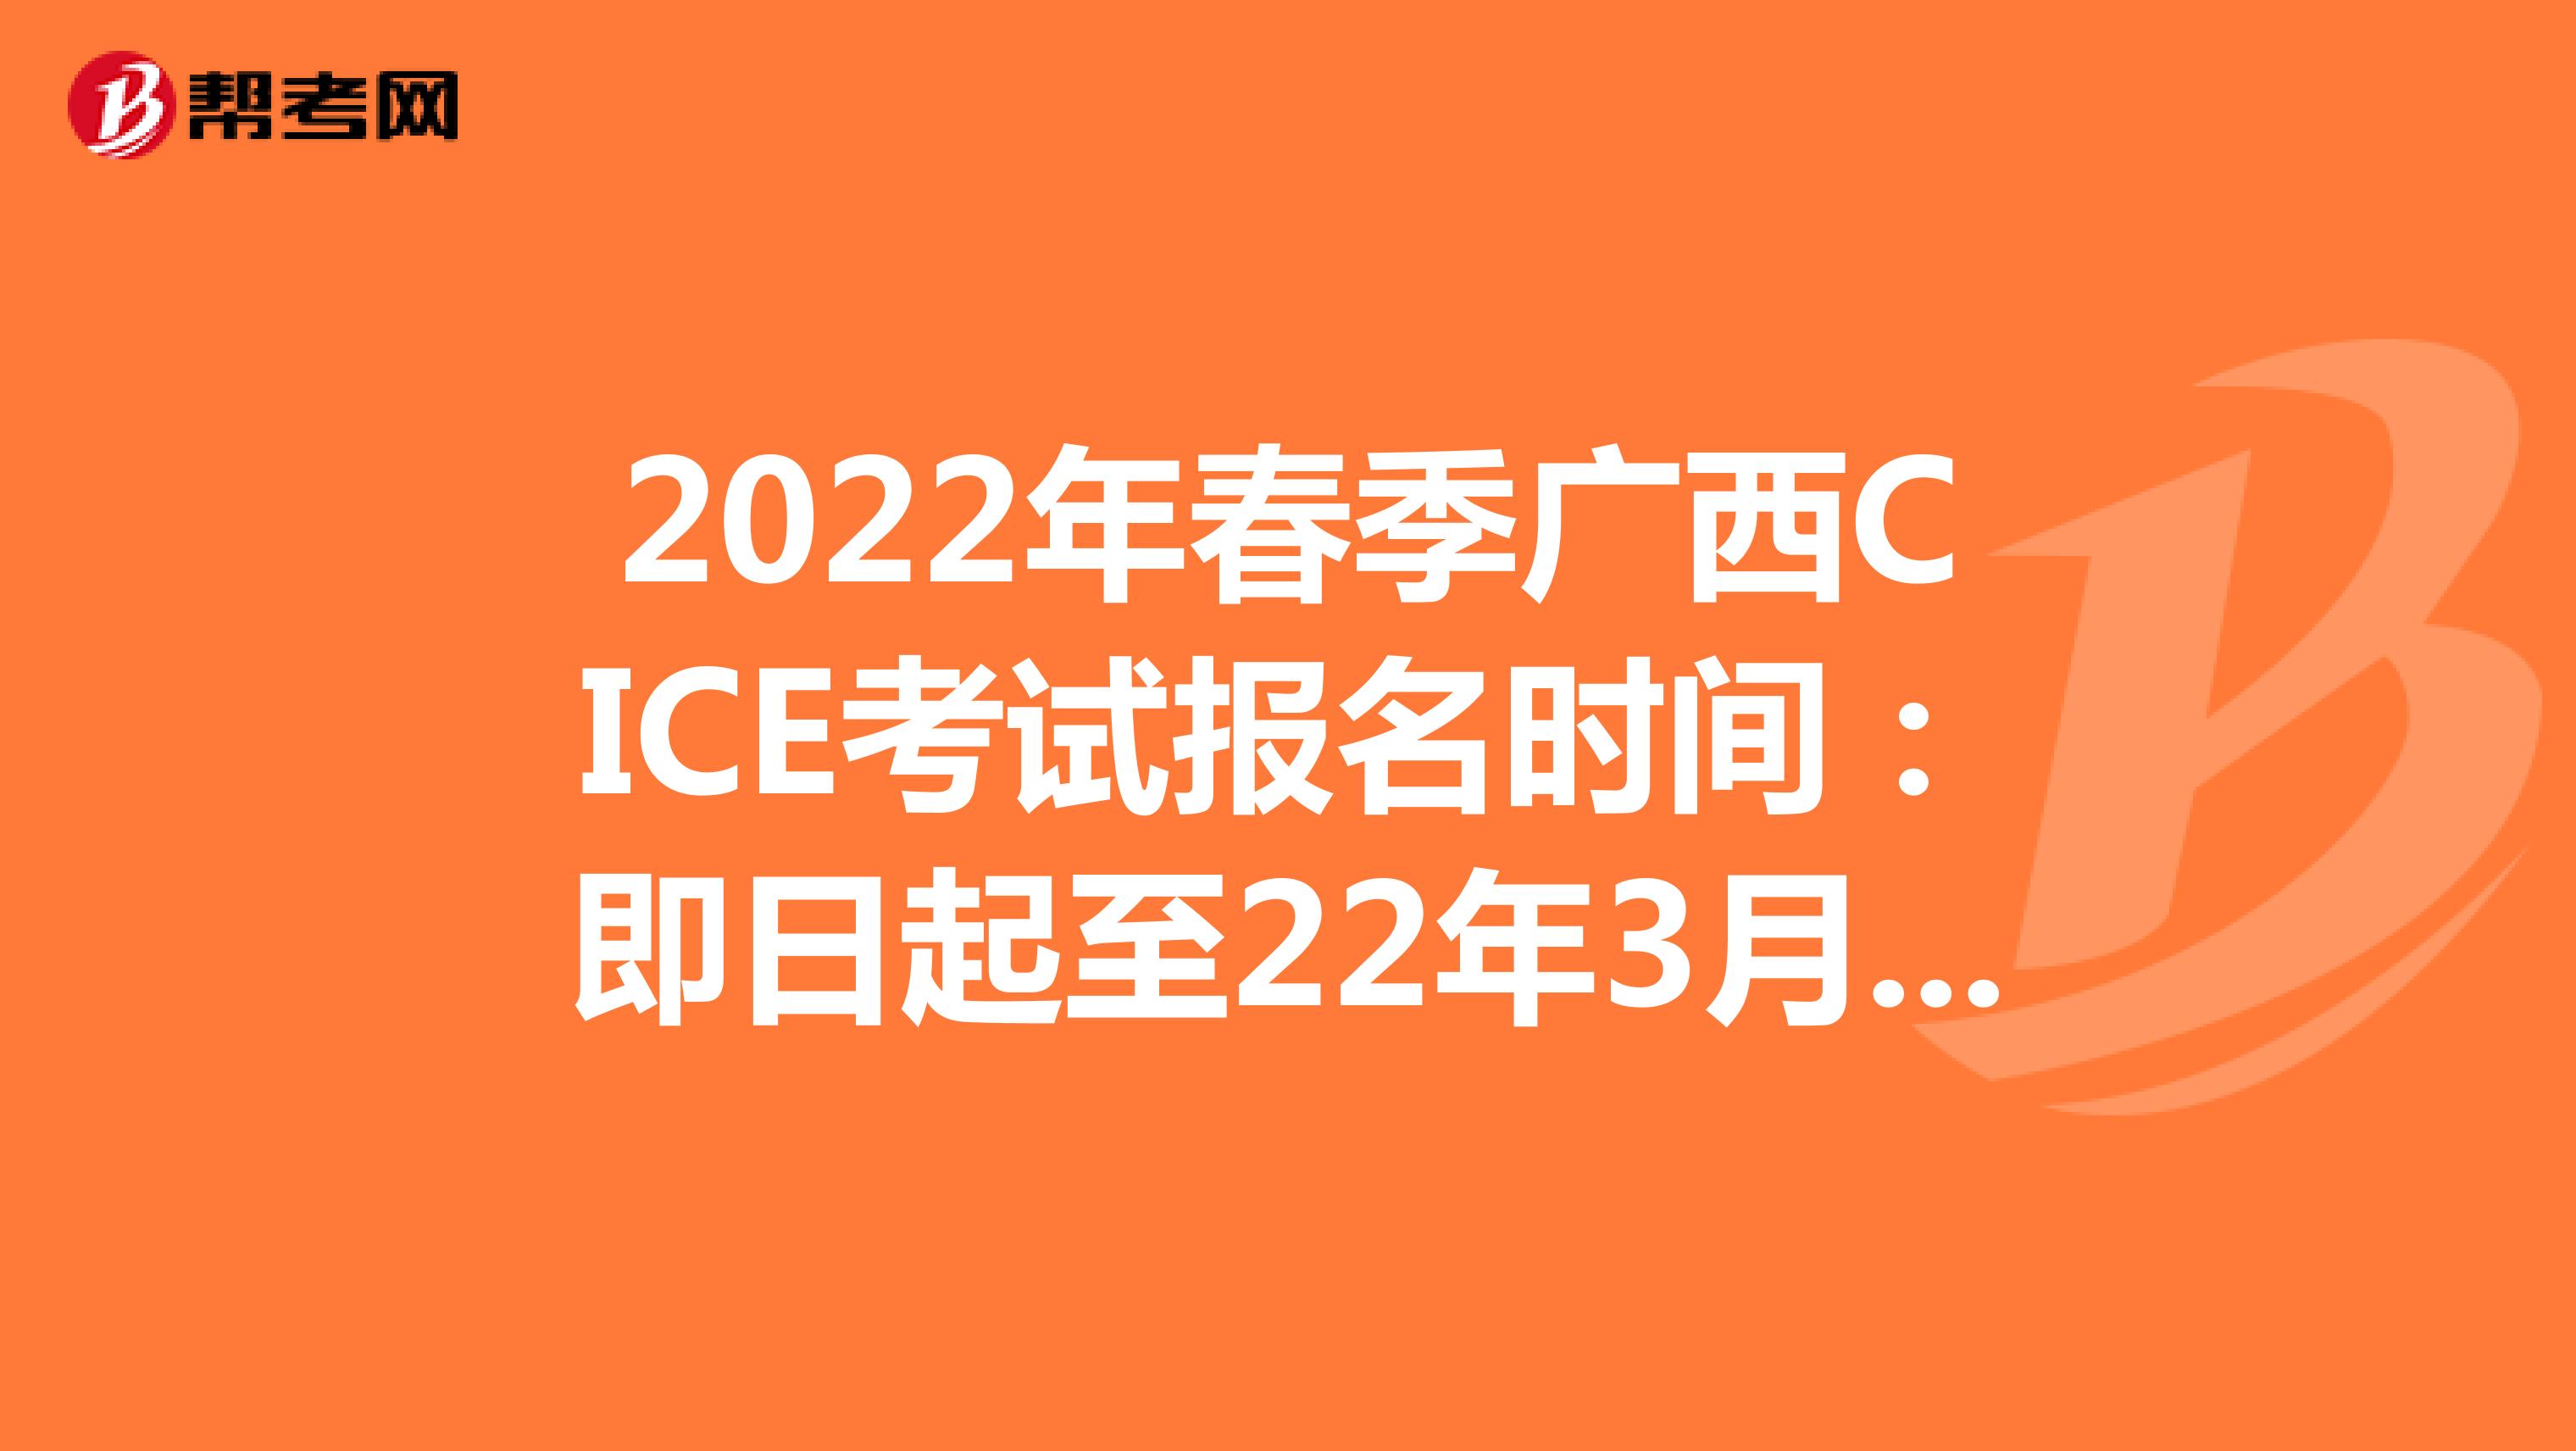 2022年春季广西CICE考试报名时间：即日起至22年3月31日